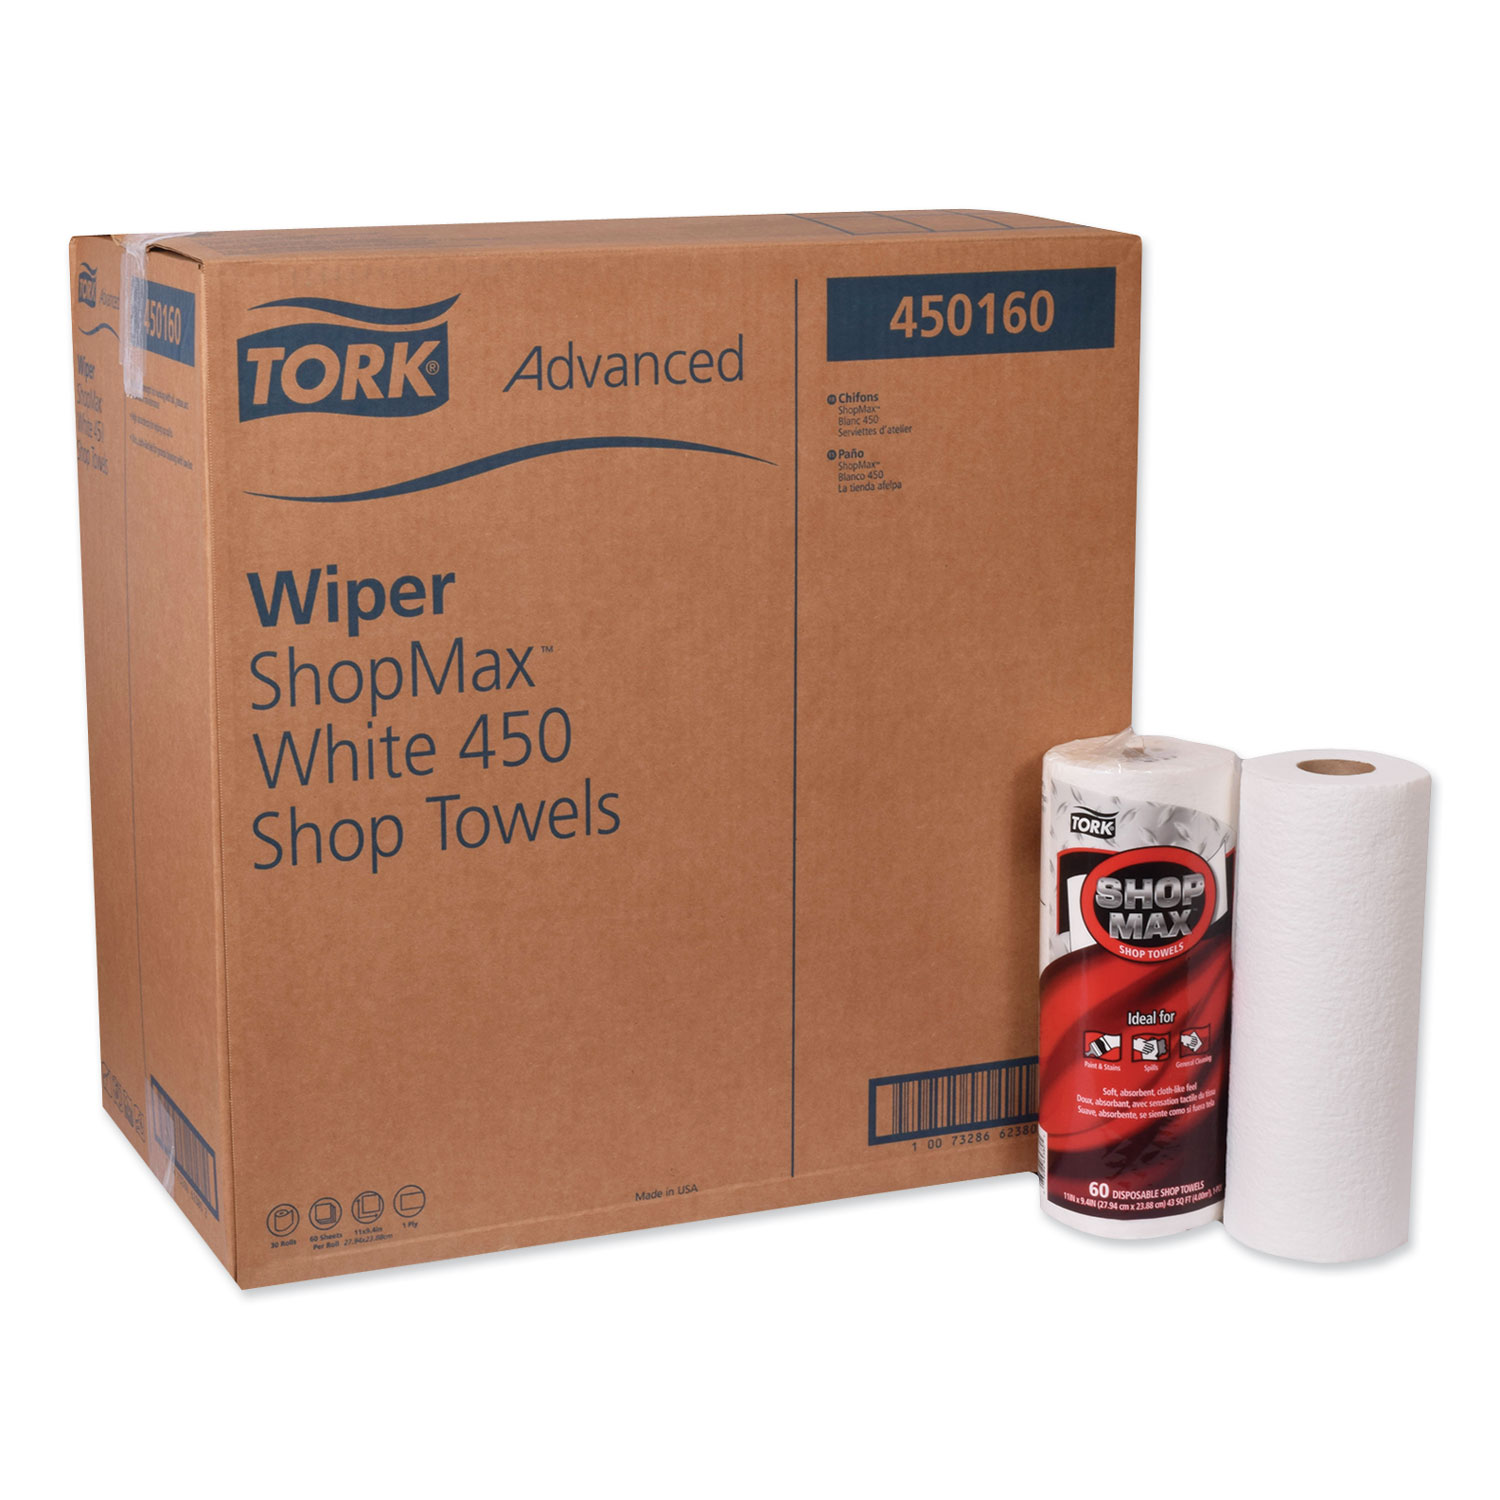  Tork 450160 Advanced ShopMax Wiper 450, 11 x 9.4, White, 60/Roll, 30 Rolls/Carton (TRK450160) 